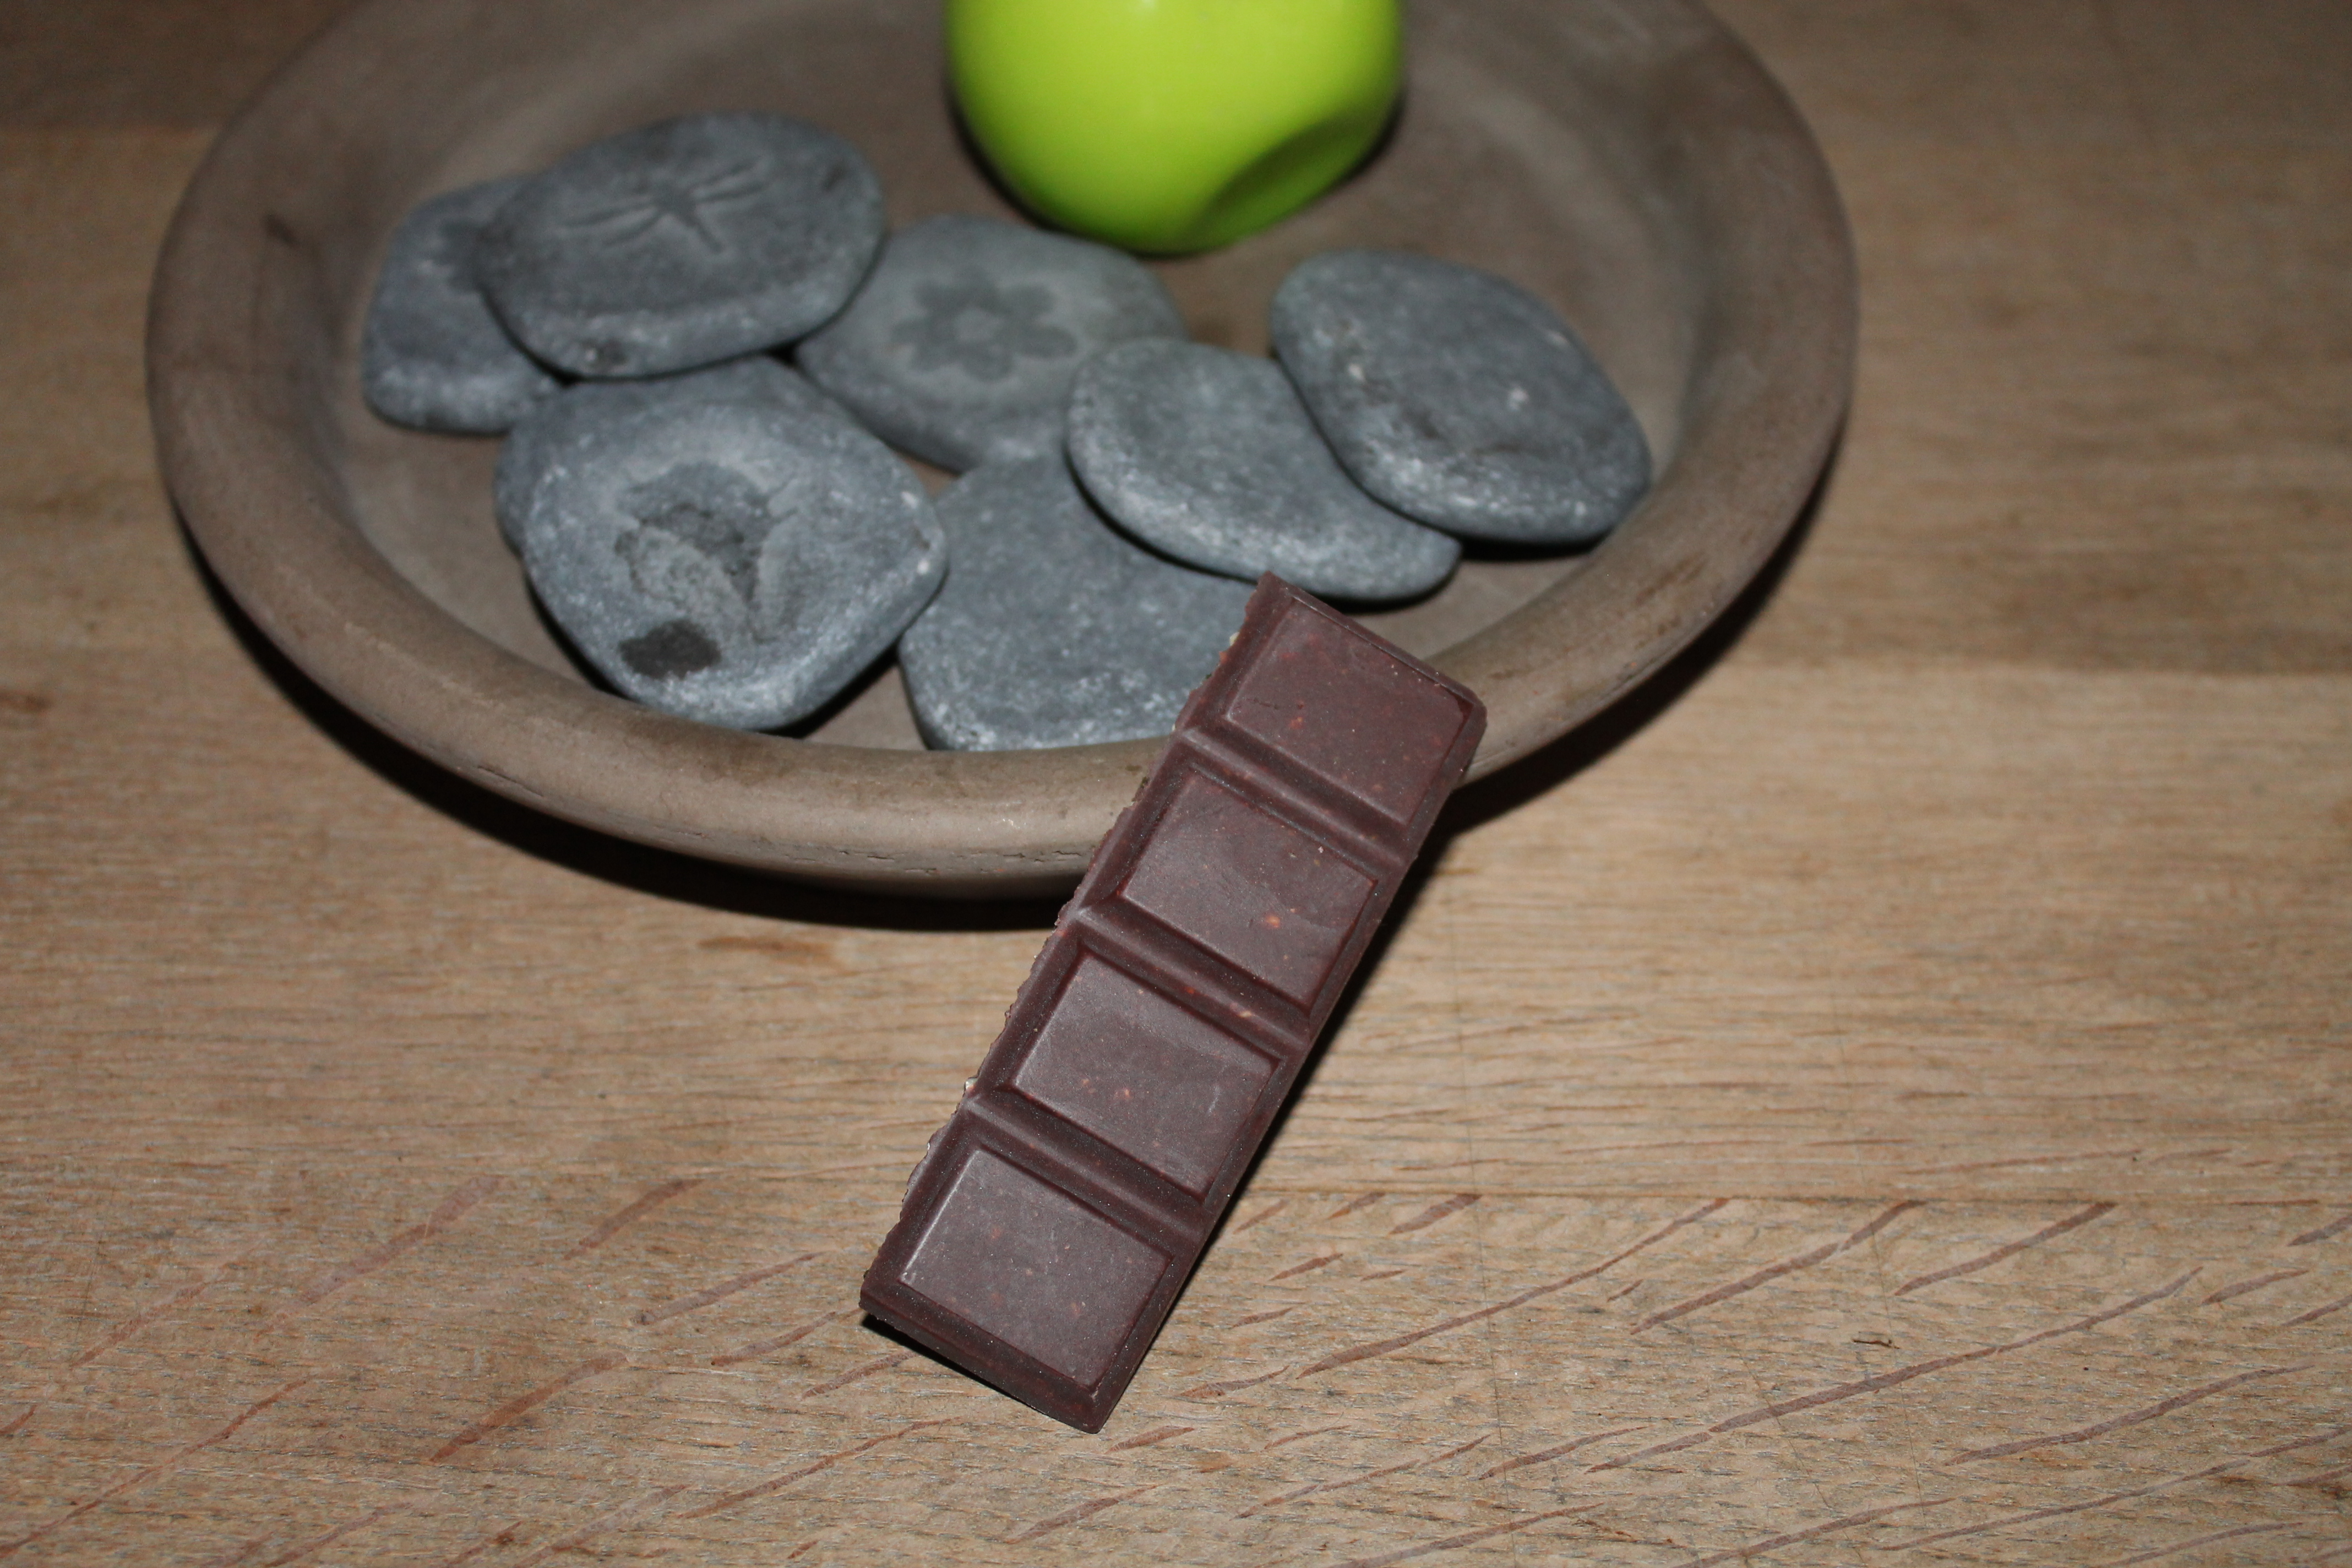 L'CHANVRE - Chocolat noir chanvre et dattes (barre)